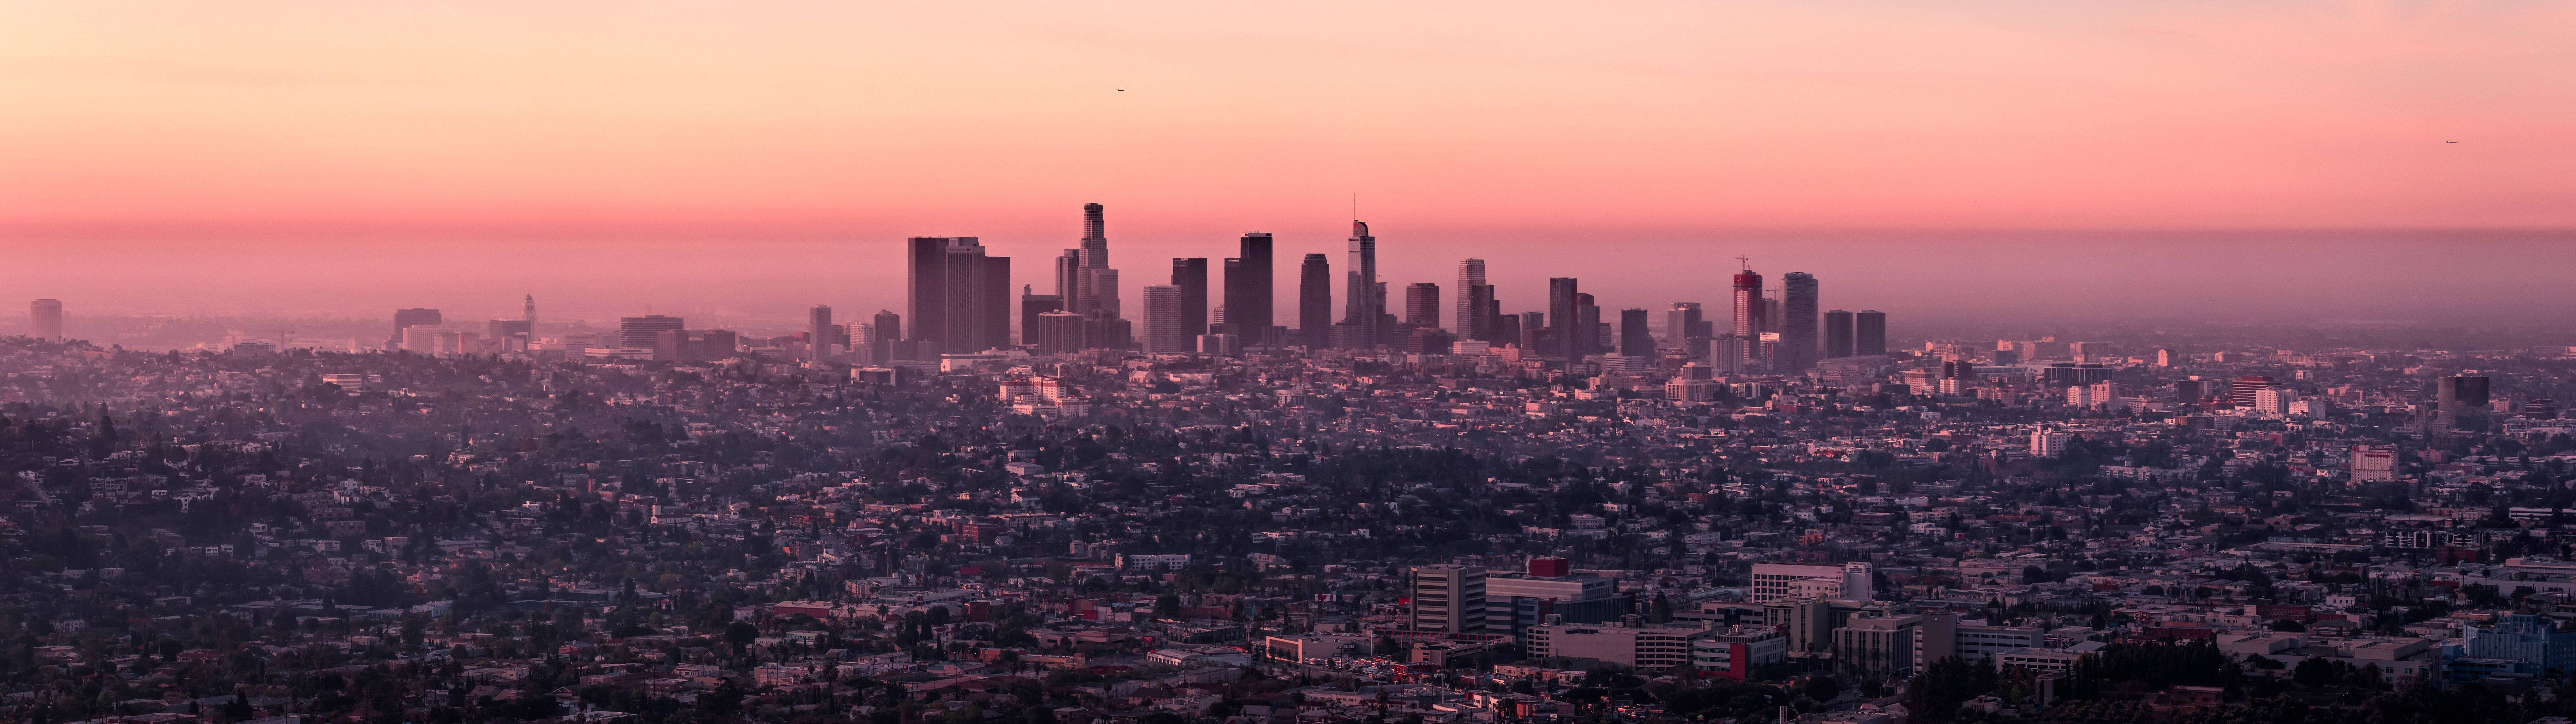 Panoramaav Los Angeles I 4k-upplösning. Wallpaper